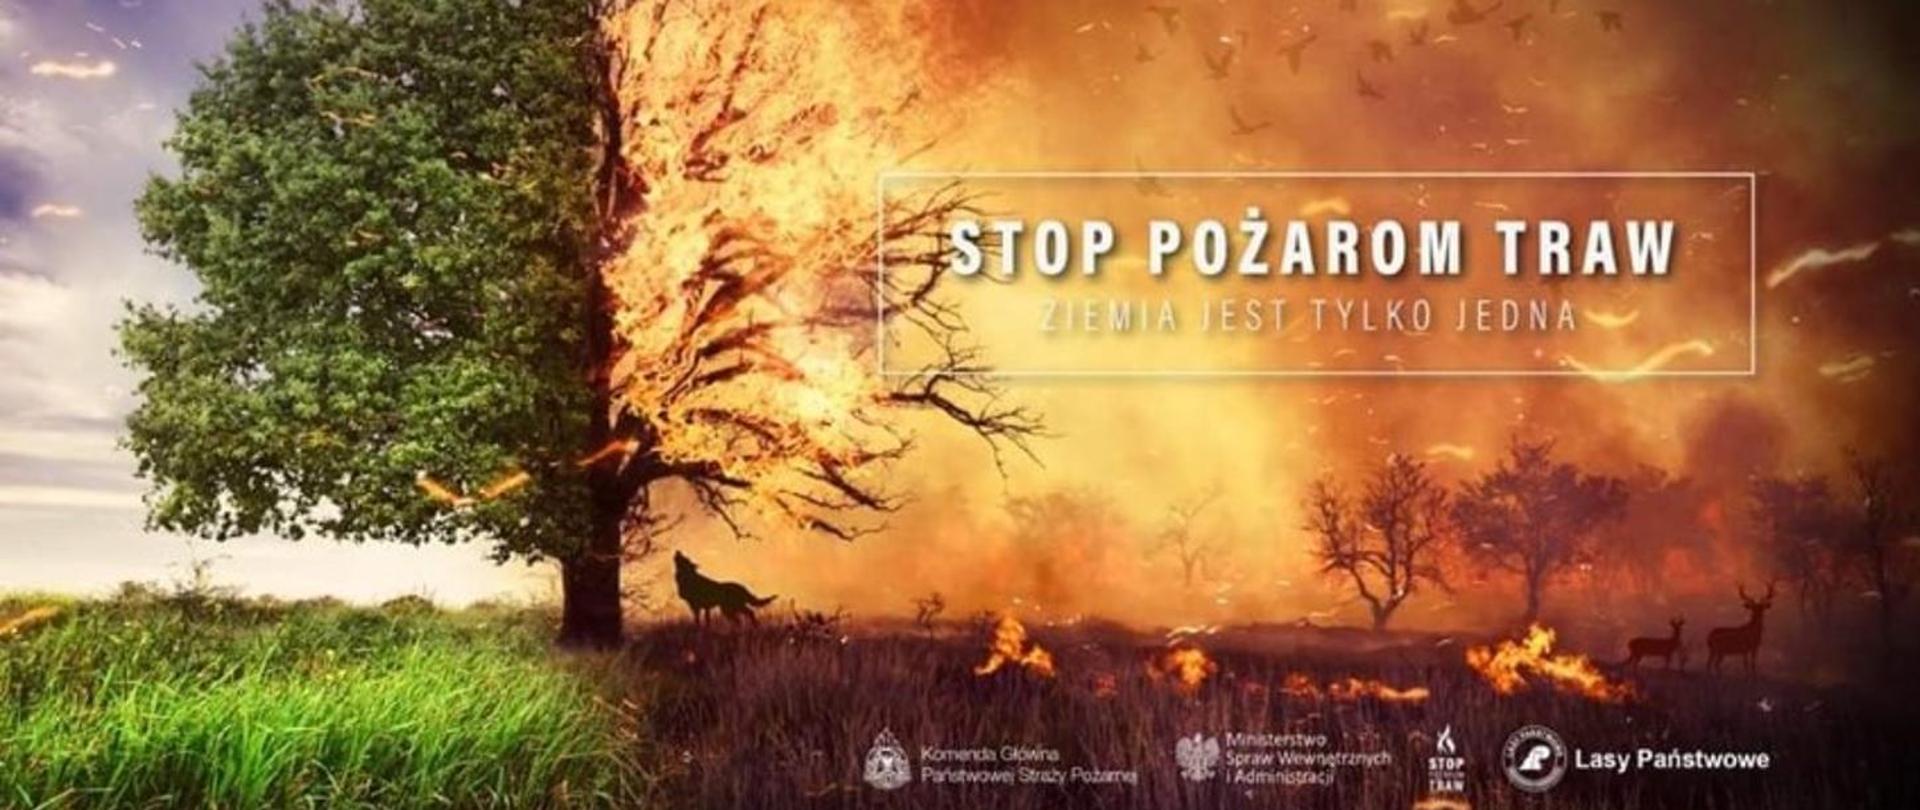 Na zdjęciu plakat obrazujący drzewo po jednej stronie zielone po drugiej objęte pożarem. Na plakacie napis Stop Pożarom Traw Ziemia jest tylko jedna.